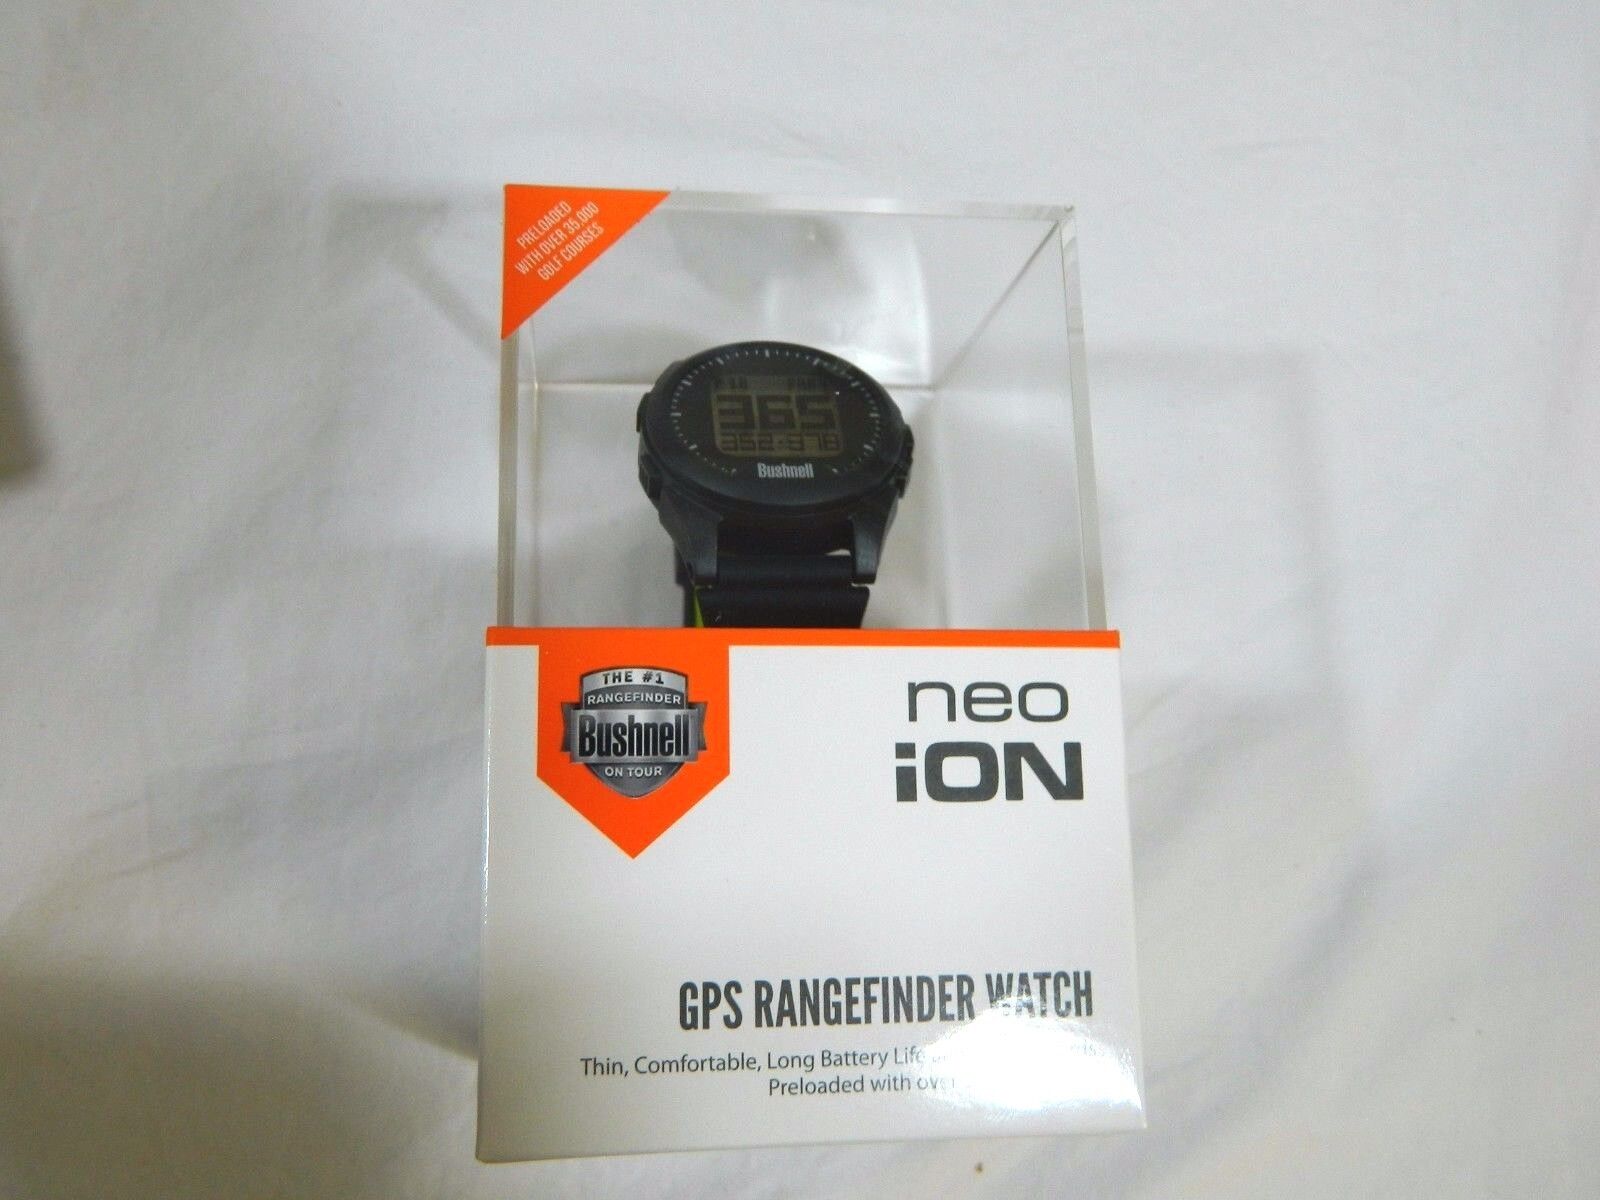 New 2016 Bushnell Neo iON Golf GPS Rangefinder Watch Black & Neon Range finder